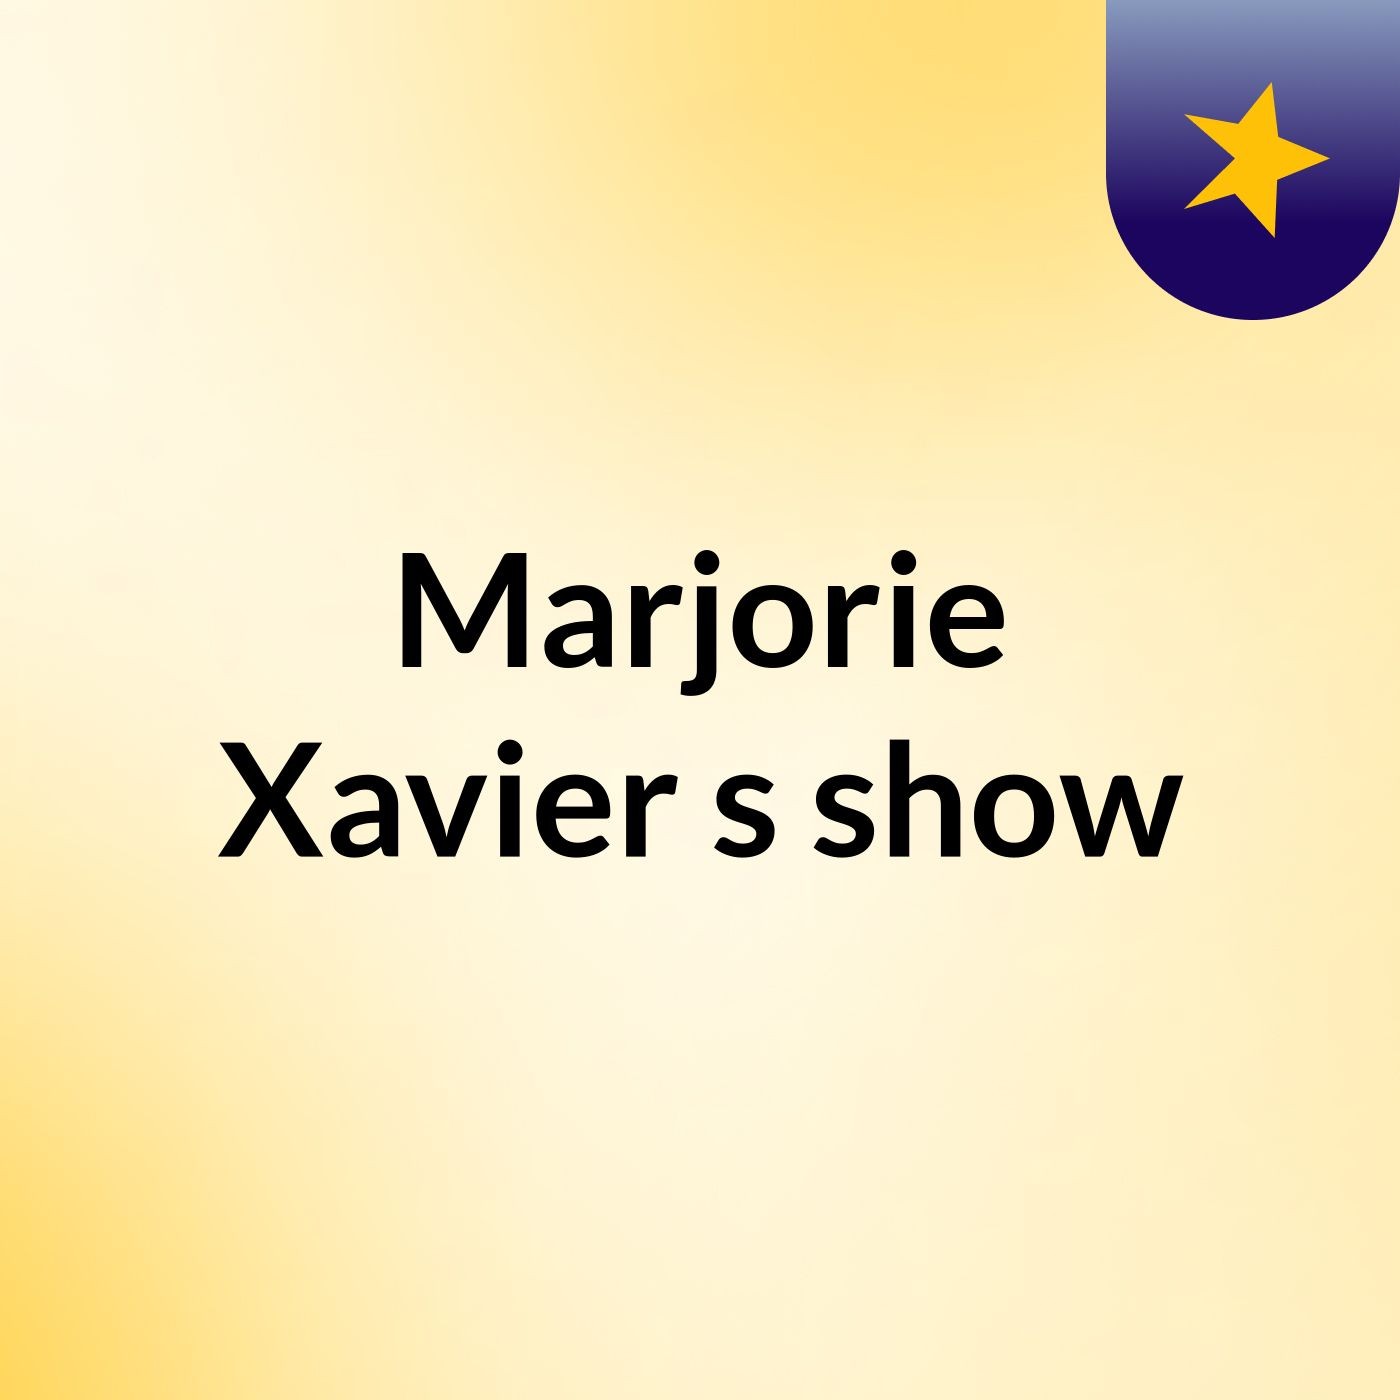 Marjorie Xavier's show